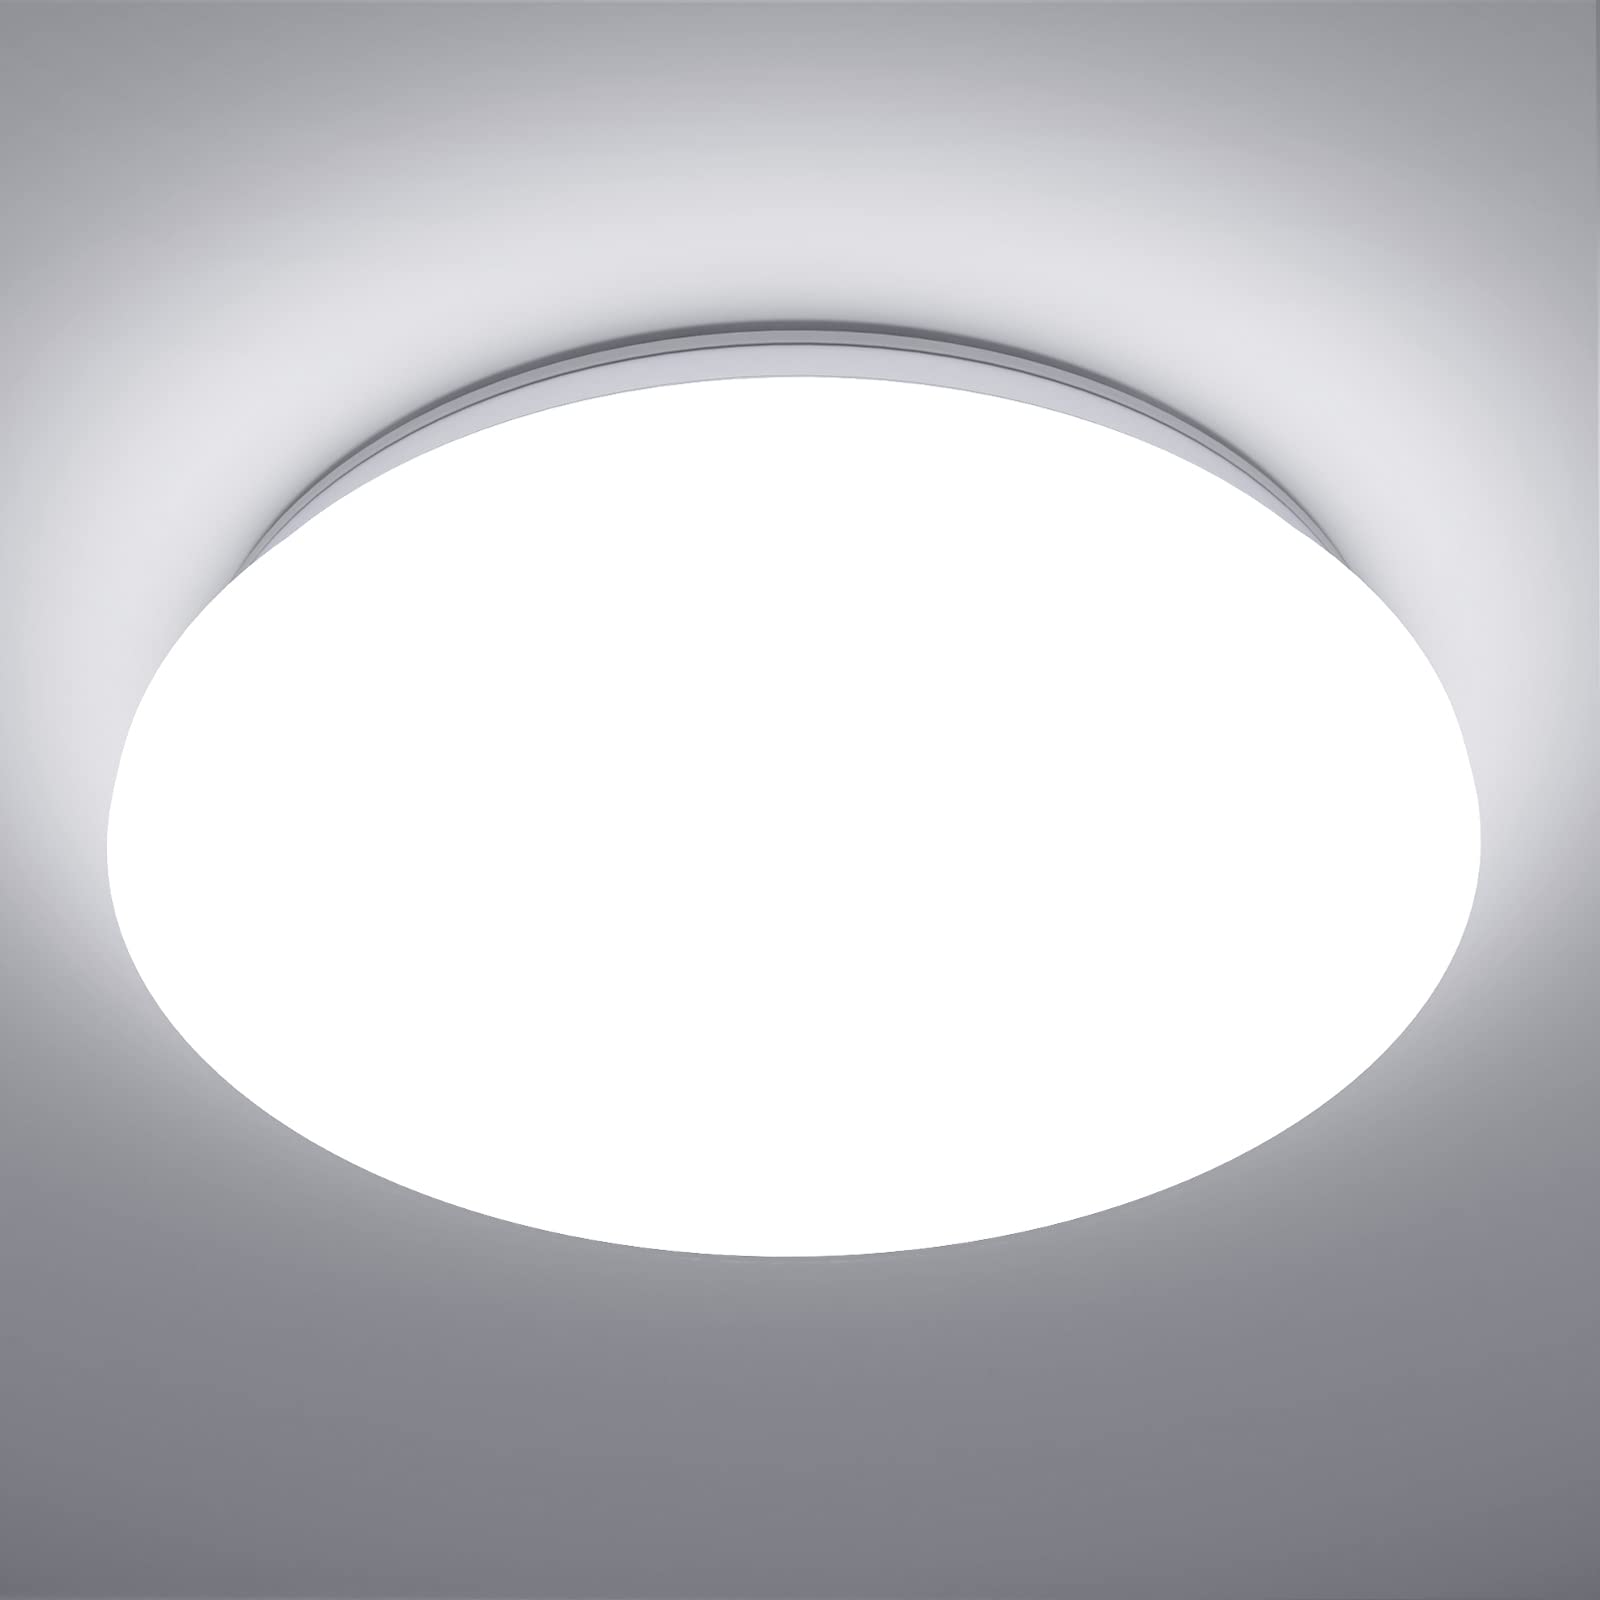 Lepro Deckenlampe 18W, LED Deckenleuchte Bad 1200LM Ø28cm 5000K für Badezimmer Flur Küche Wohnzimmer Schlafzimmer Balkon Licht, Rund Kaltweiß Badezimmerlampe, LED Panel Flach Lampe, IP20 Badlampe